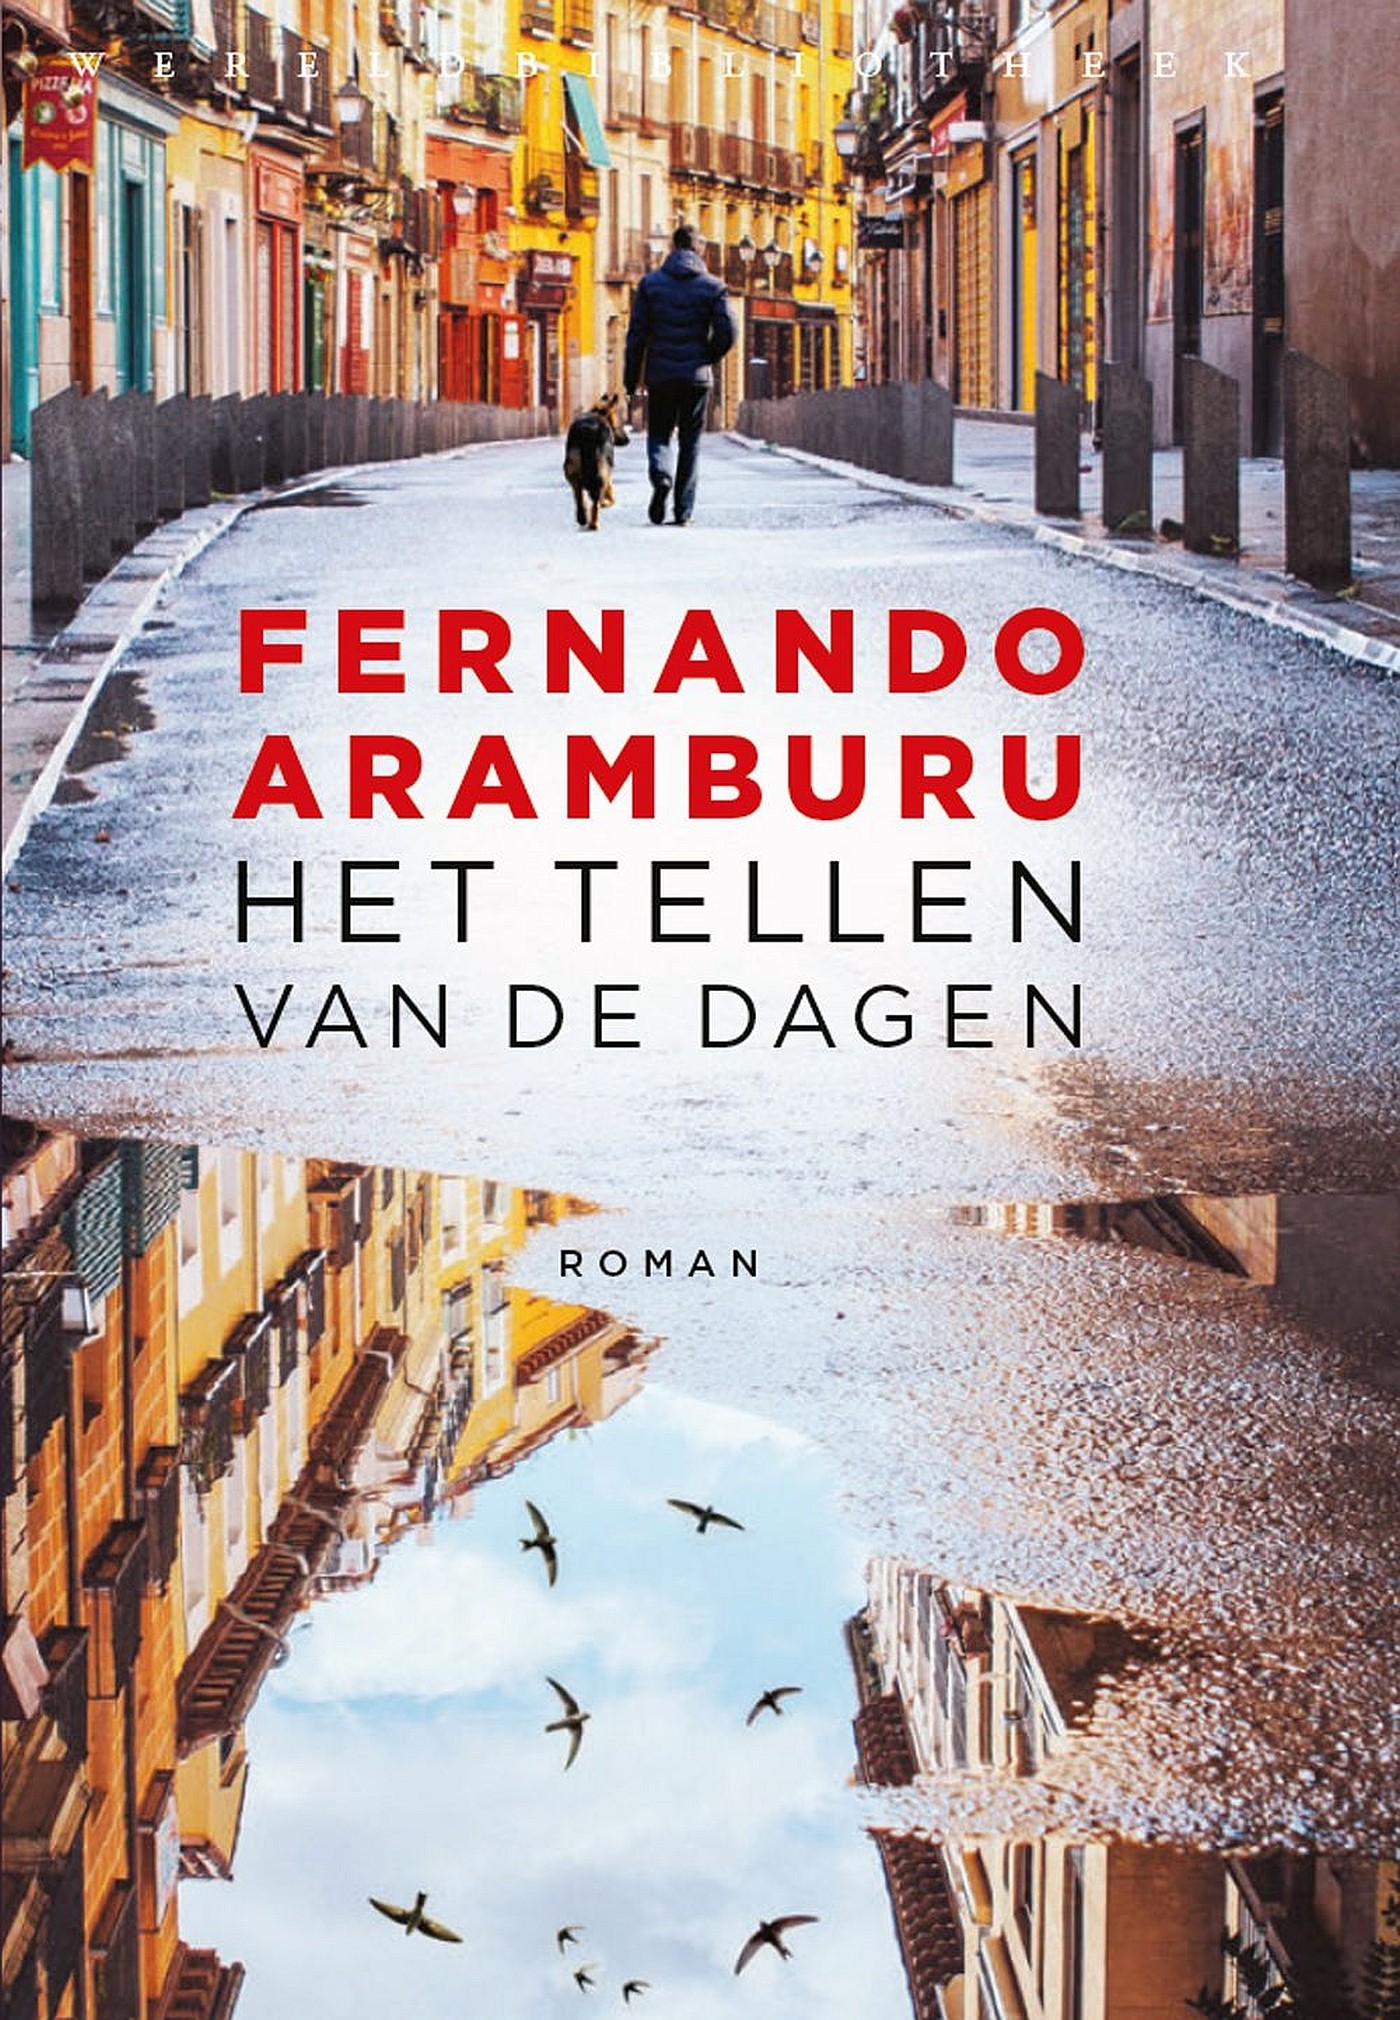 Aramburu, Fernando-tellen van de dagen, Het